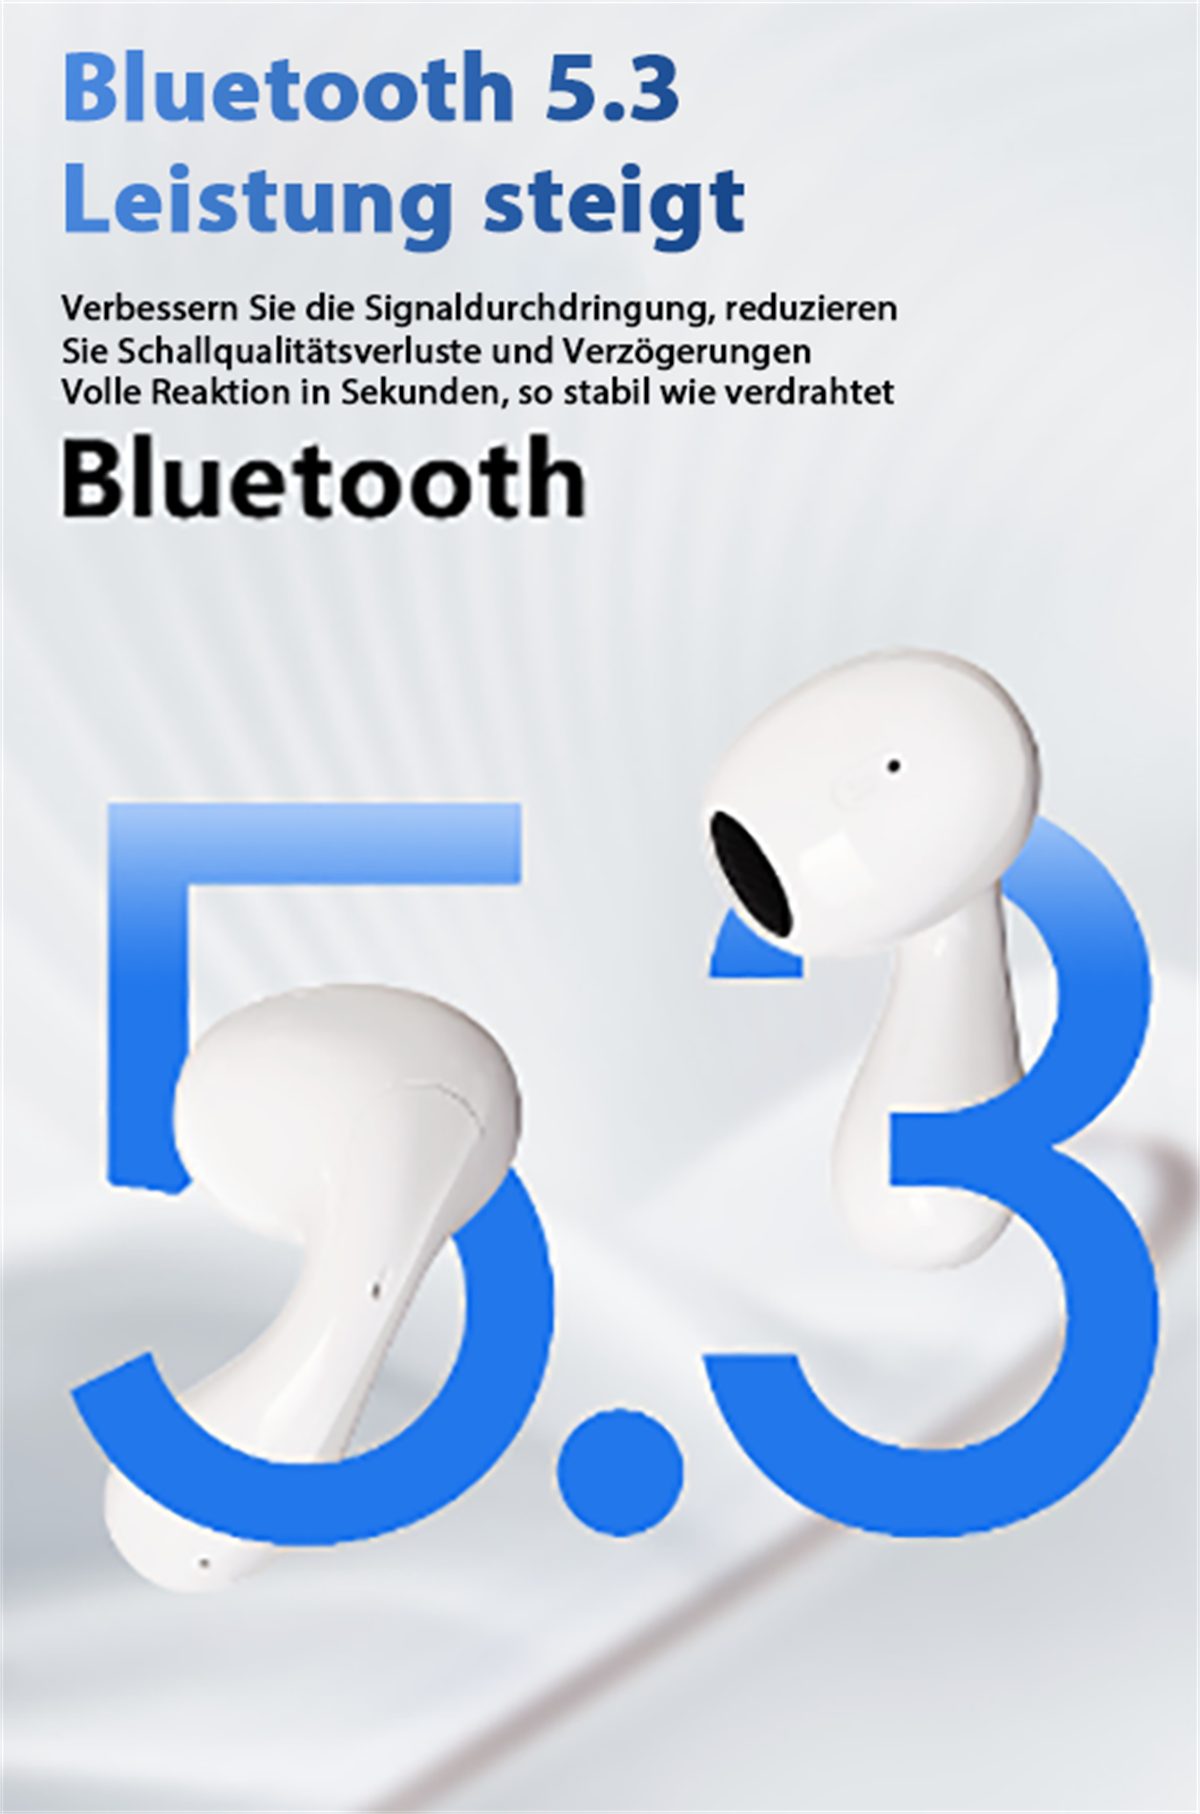 selected In-Ear-Kopfhörer lange Digitalanzeige Geräuschunterdrückung In-Ear-Kopfhörer Akkulaufzeit) Weiß V5.3 super (Bluetooth Kabelloser carefully + intelligente mit LED-Anzeige, +